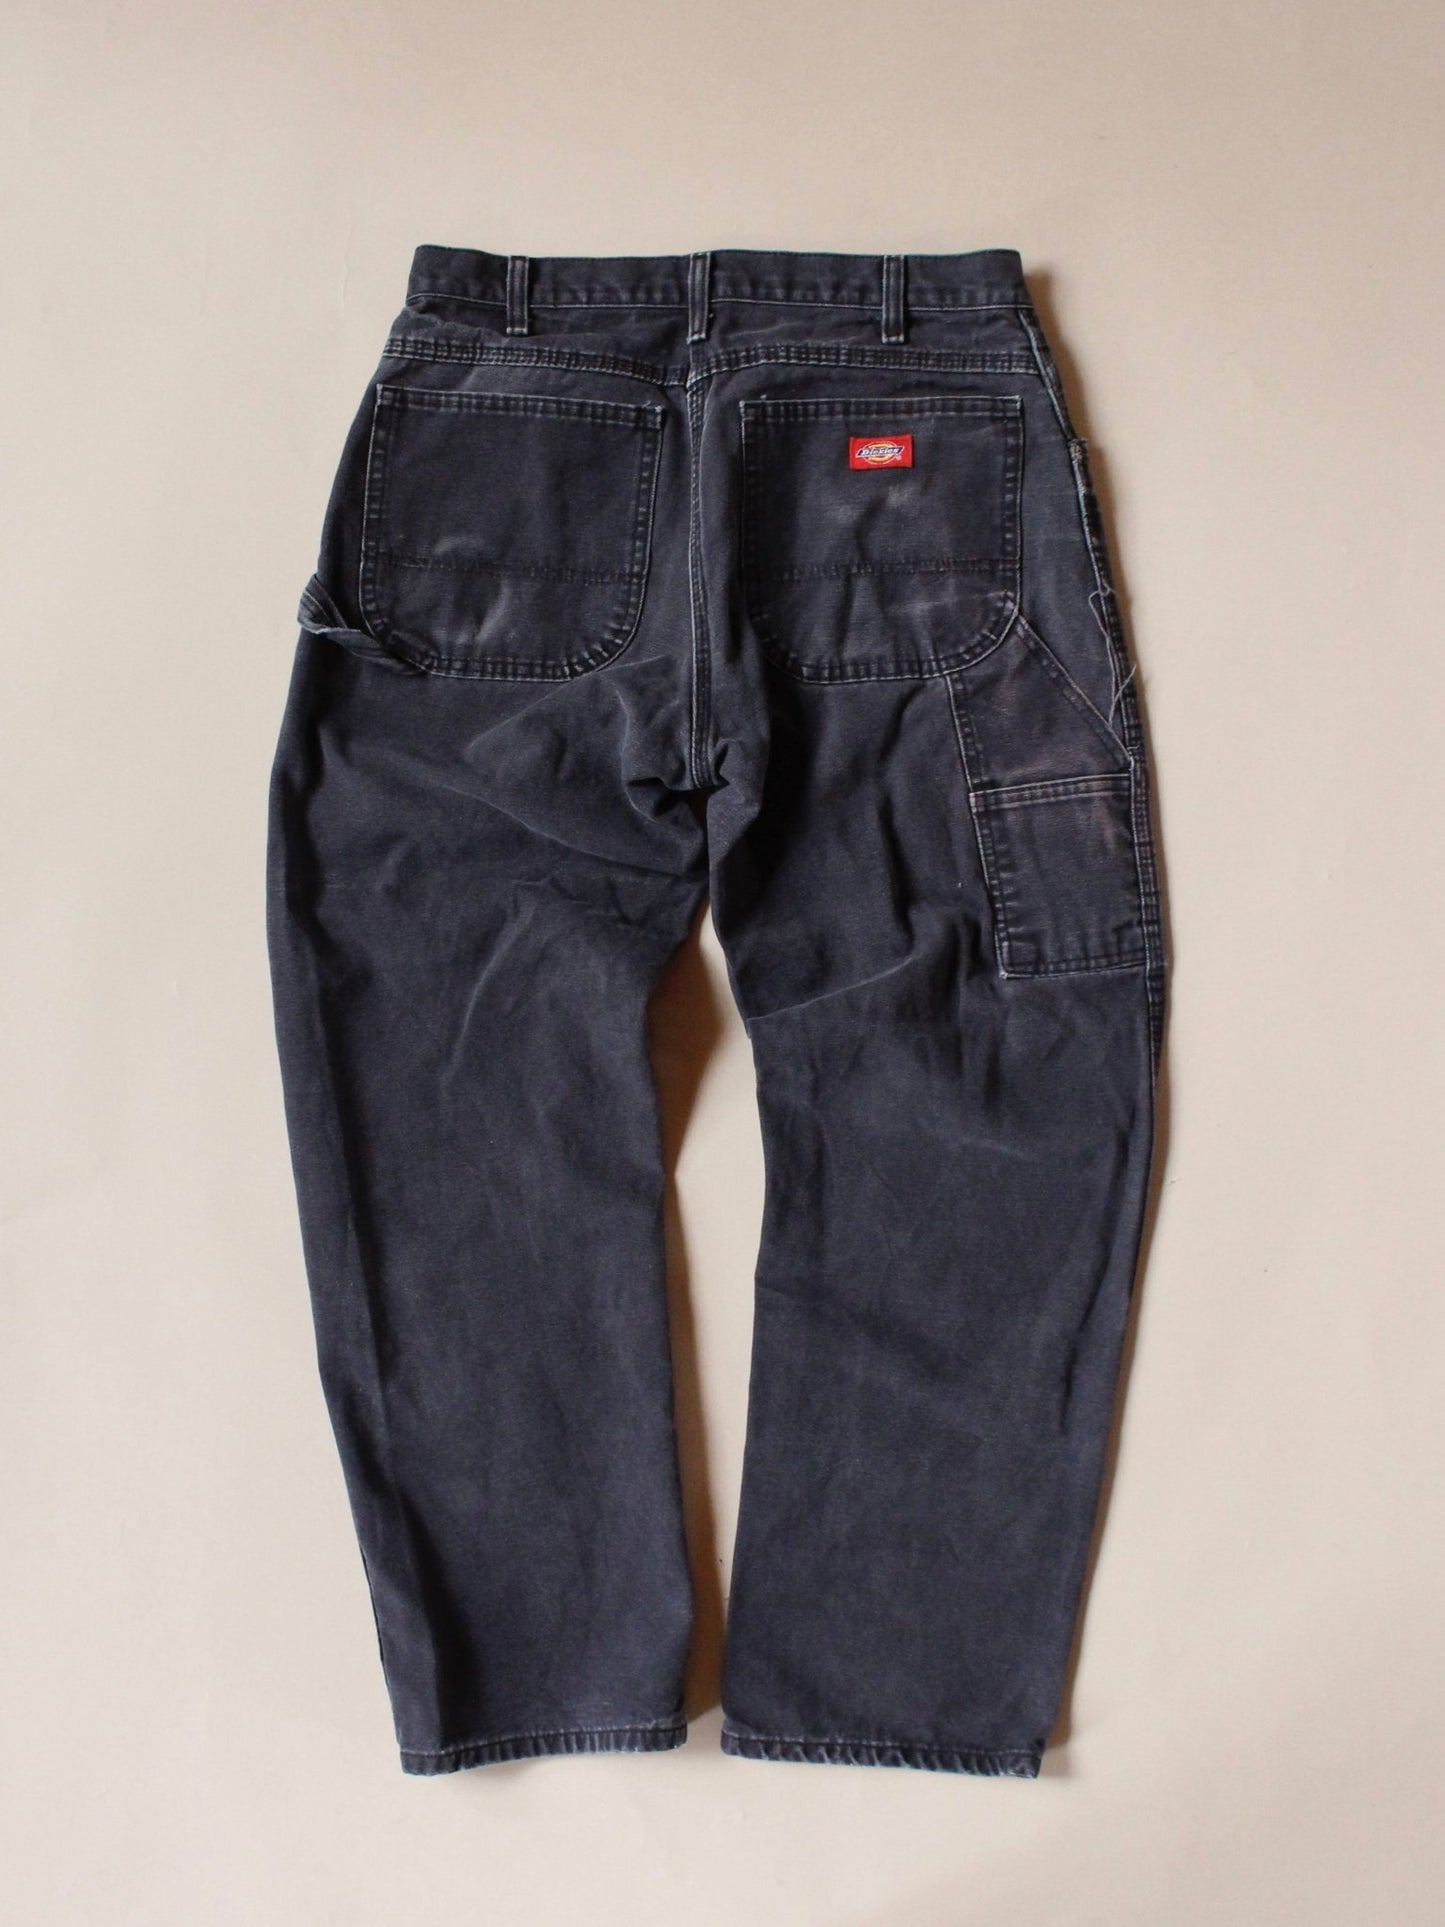 2000s Dickies Workwear Jeans